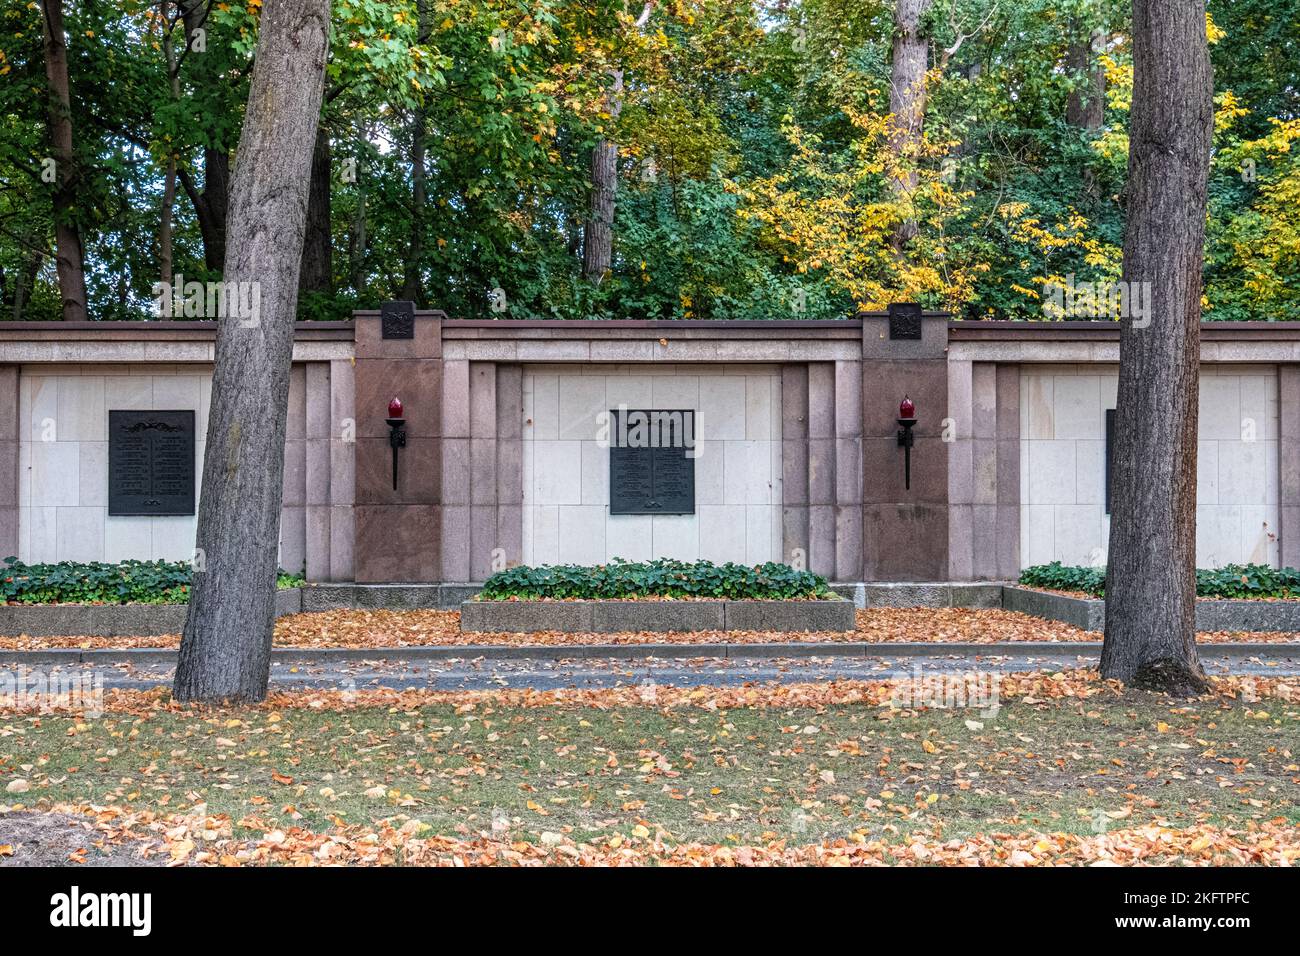 Muro de la Guerra Soviética Memorial y Cementerio para los soldados que murieron en la Segunda Guerra Mundial, Schönholzer Heide, Niederschönhausen, Pankow, Berlín, Alemania Foto de stock